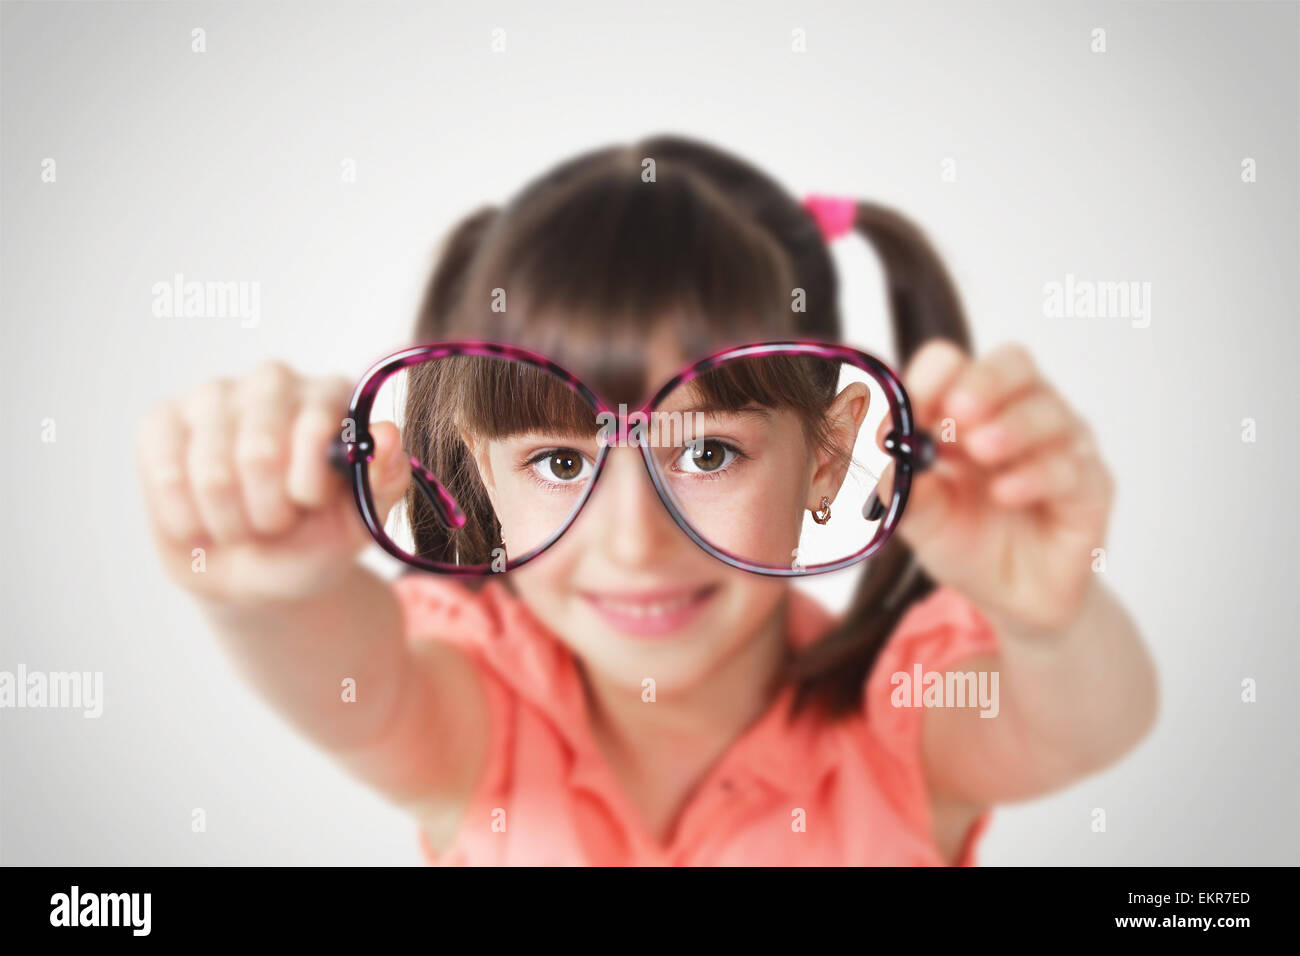 little girl holding eyeglasses, health eyesight concept. Soft focus Stock Photo